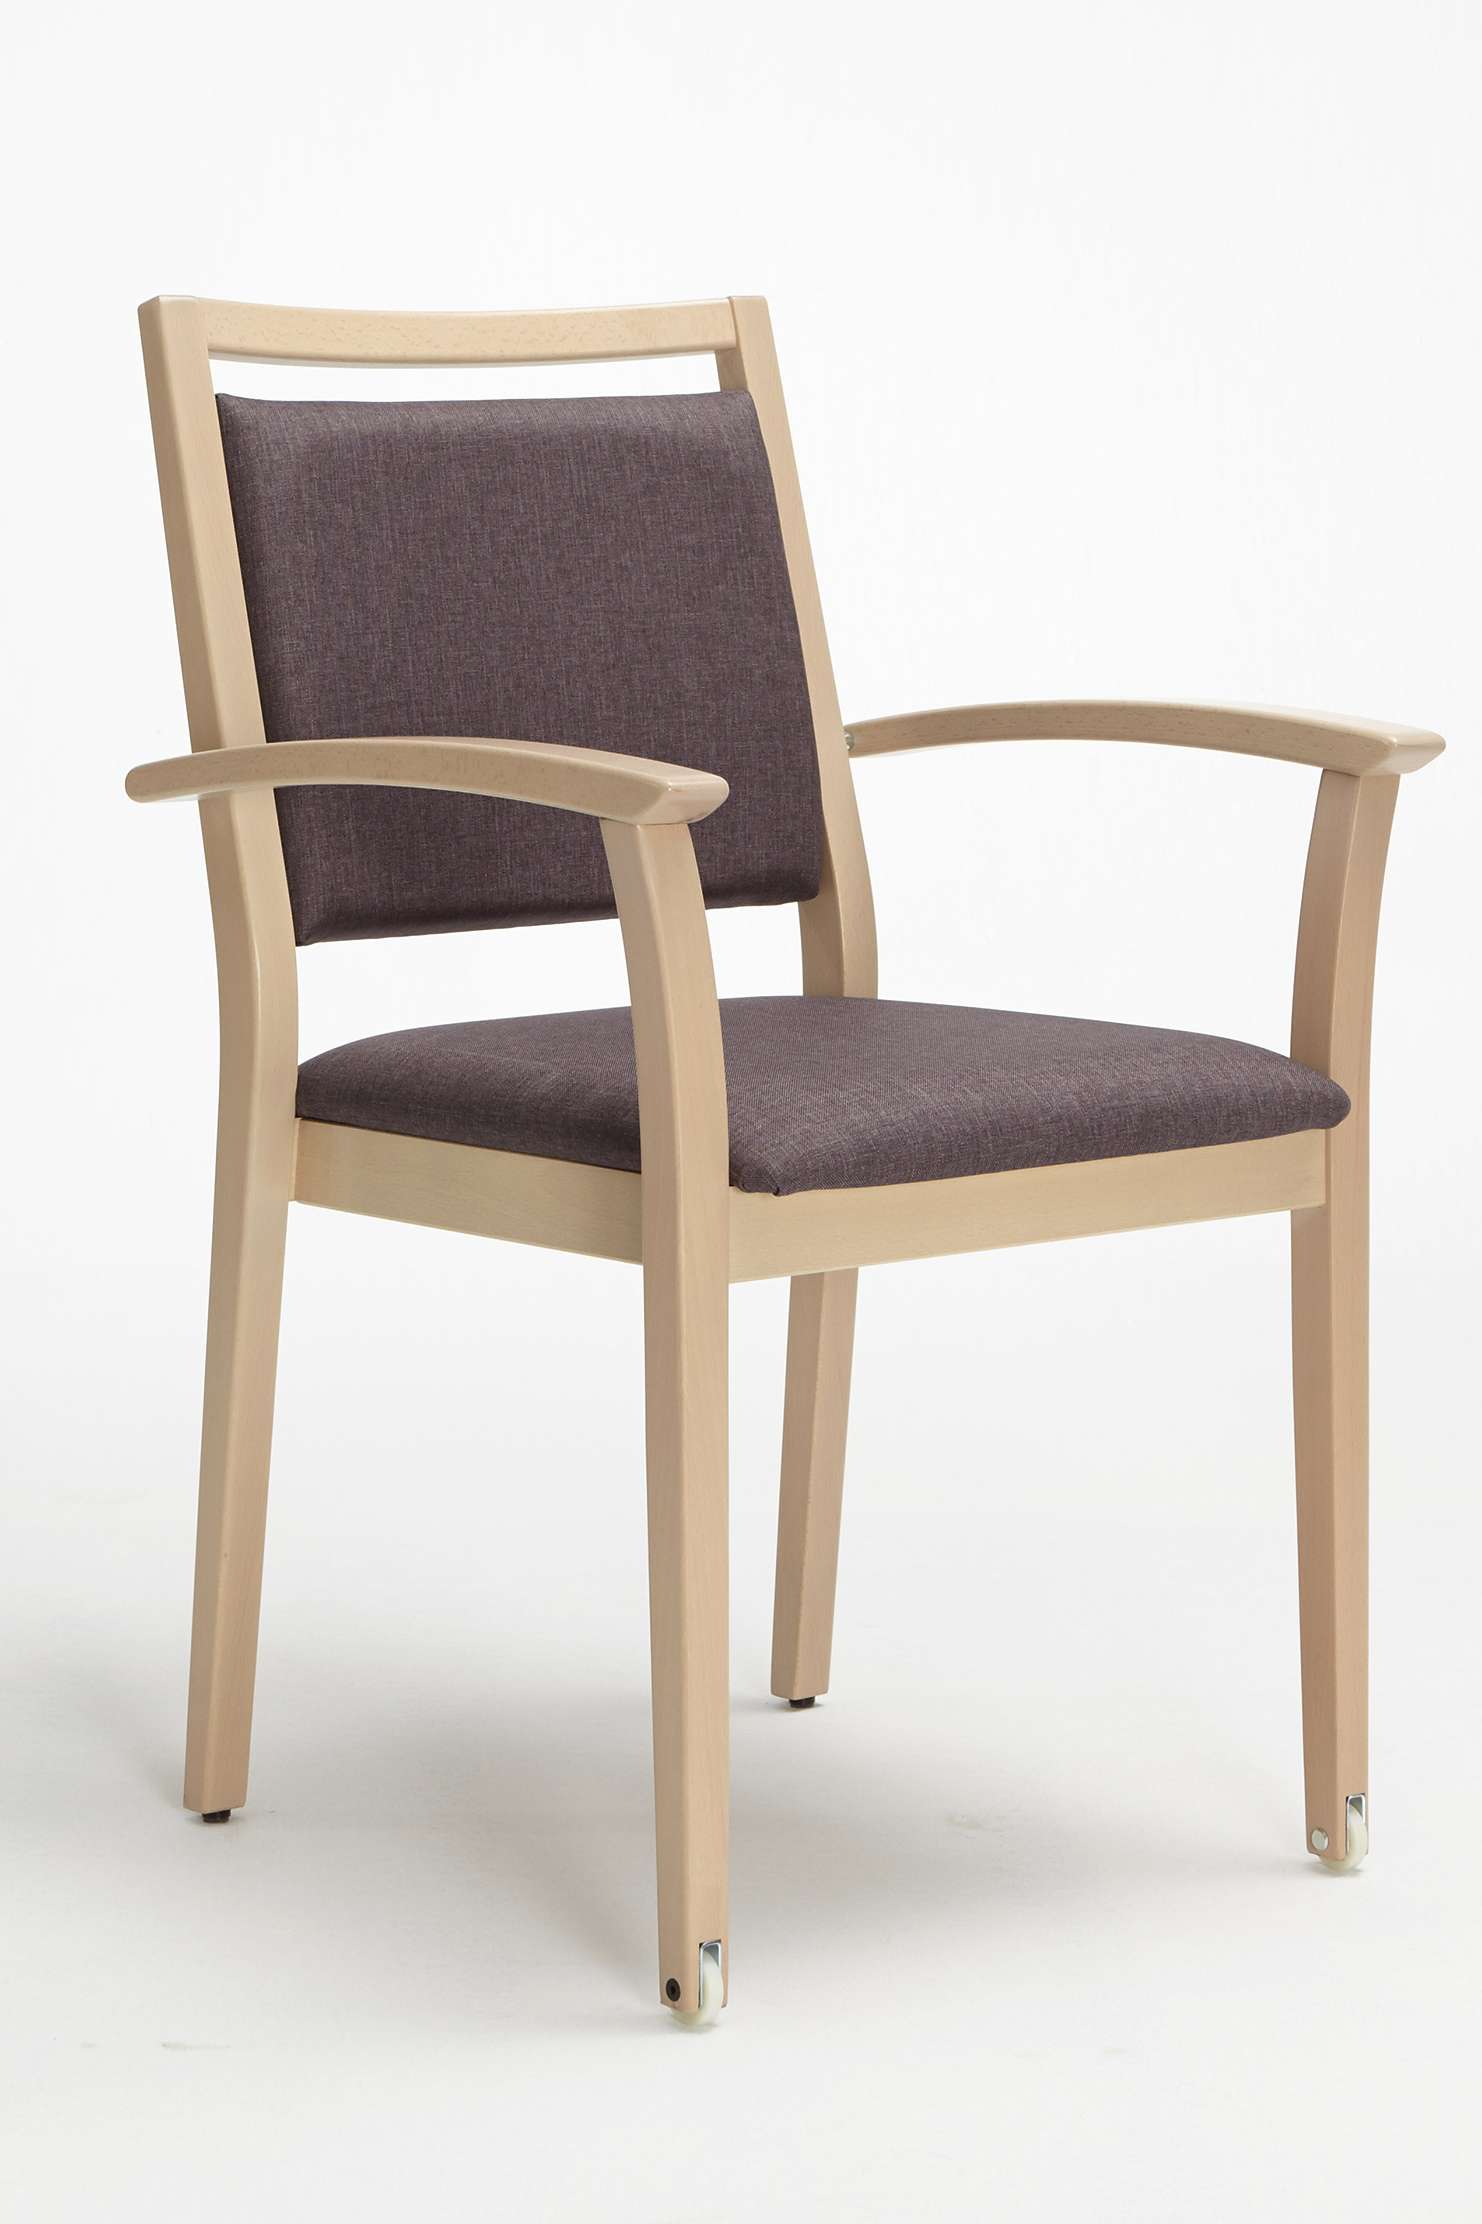 Model Mavo als stapelbare stoel met armleuningen